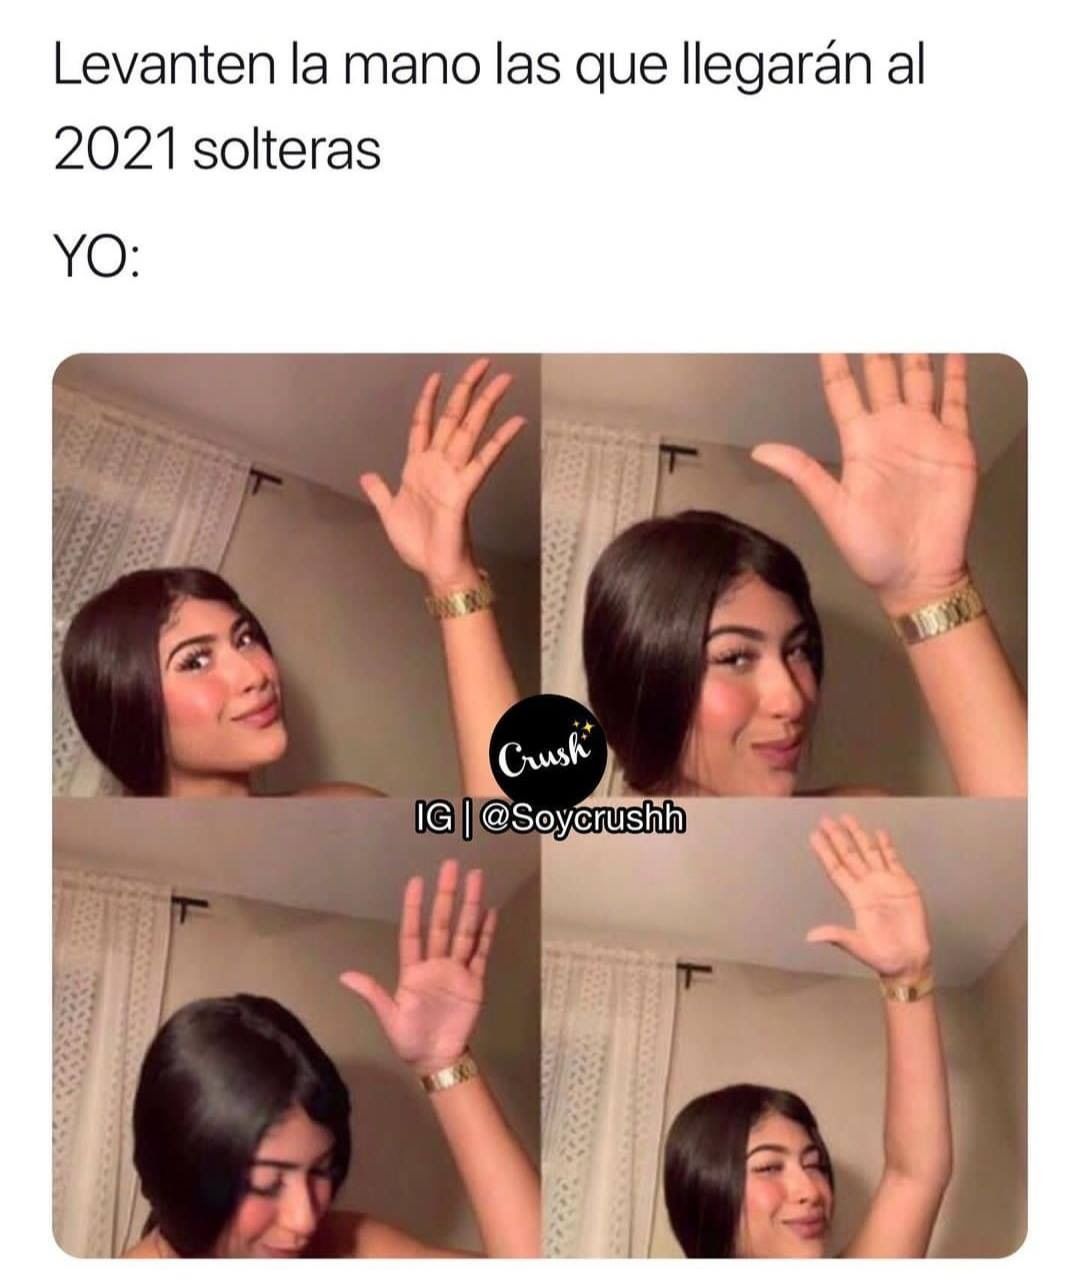 Levanten la mano las que llegarán al 2021 solteras. Yo: